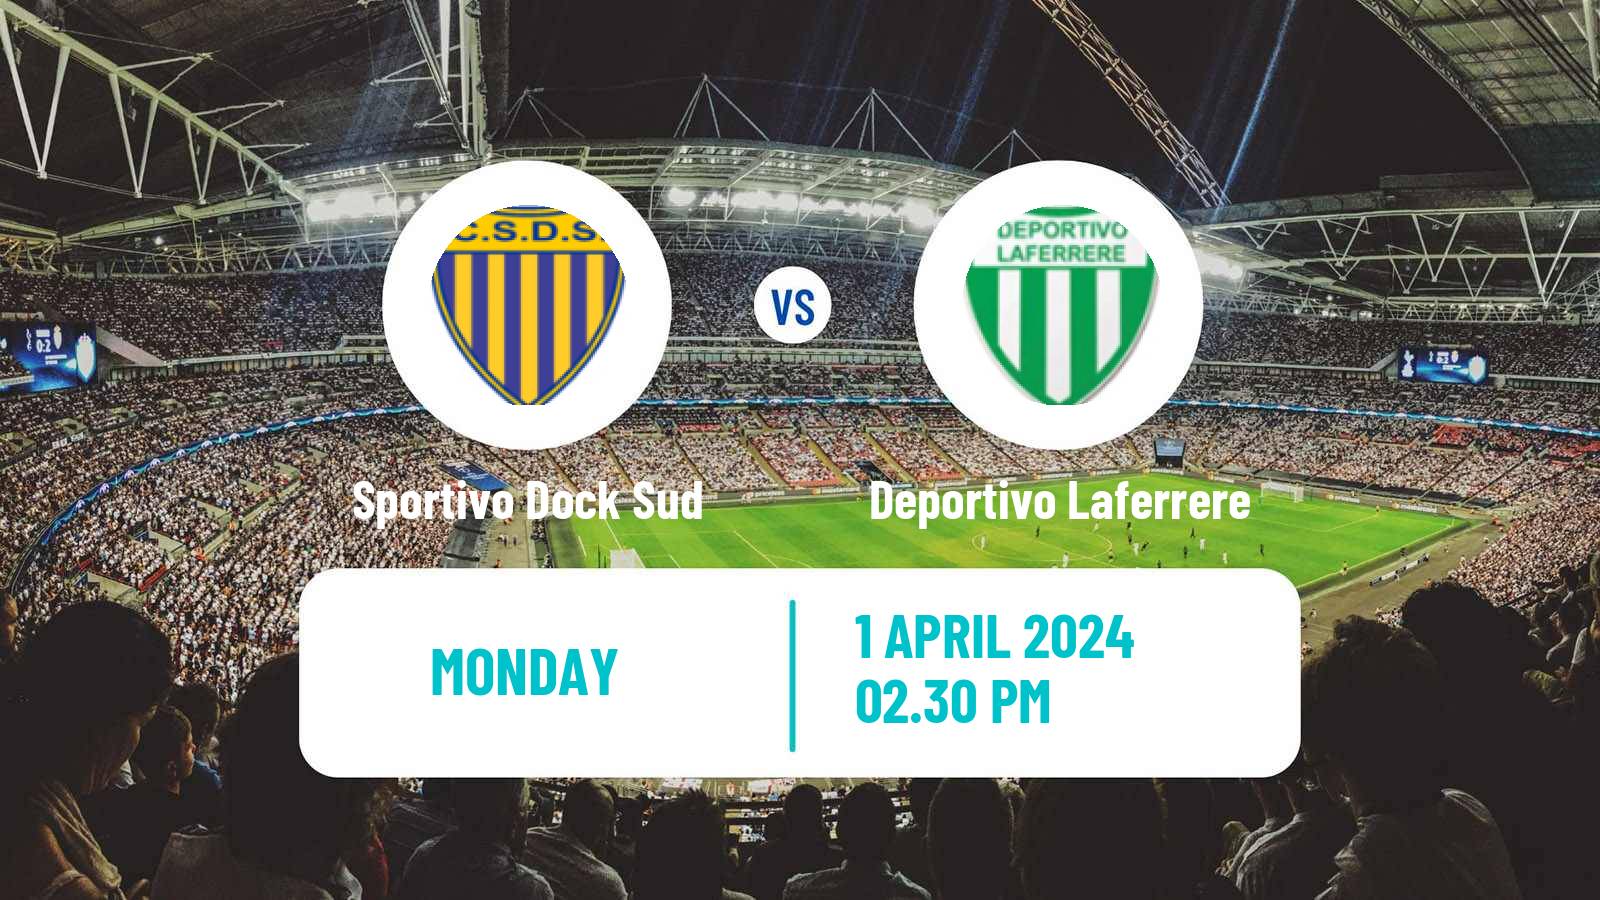 Soccer Argentinian Primera B Sportivo Dock Sud - Deportivo Laferrere